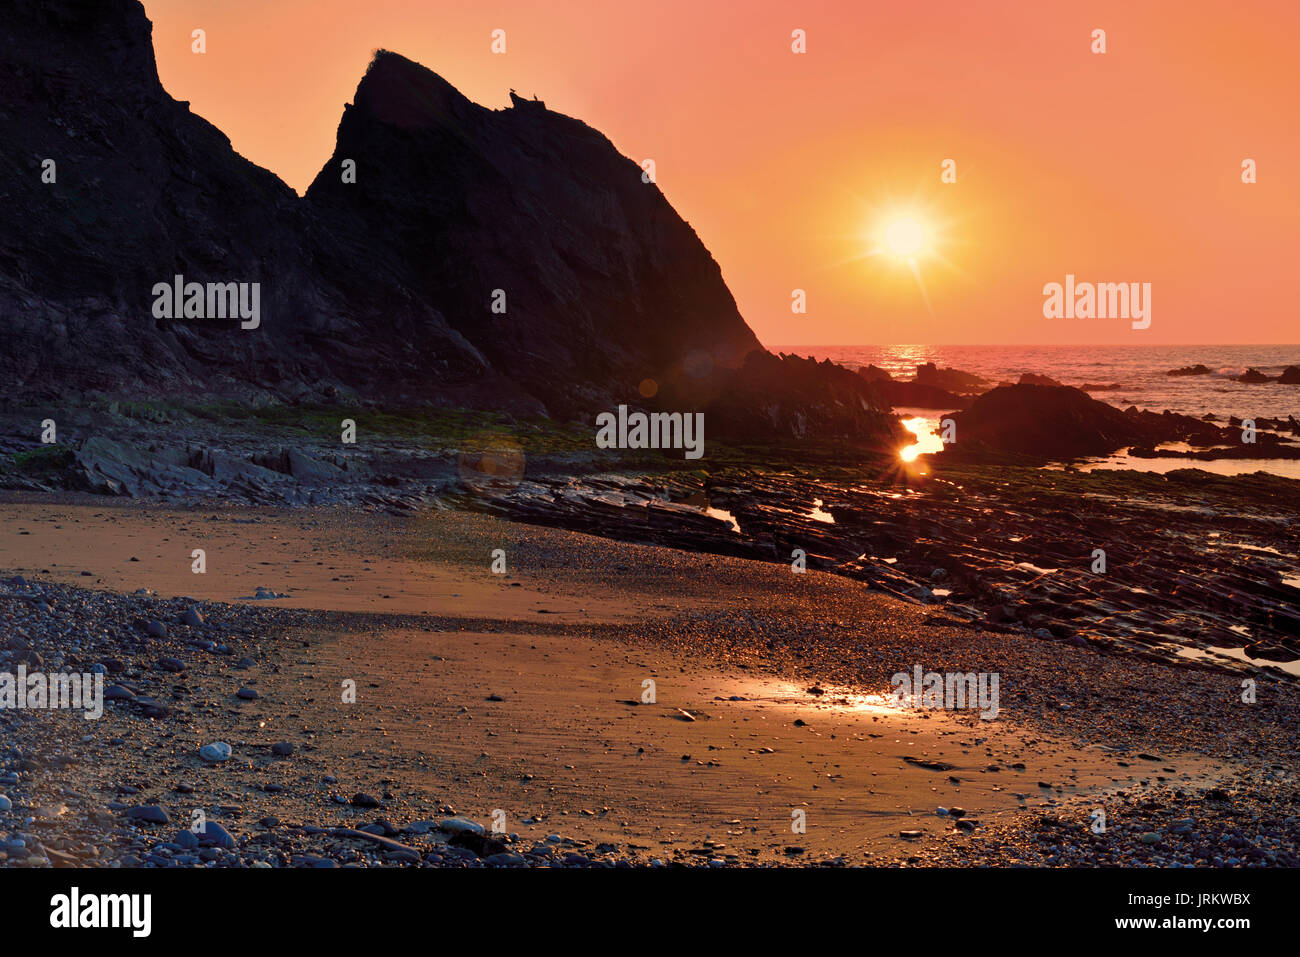 Romantischer Sonnenuntergang am wilden Strand mit riesigen Felsen Stockfoto